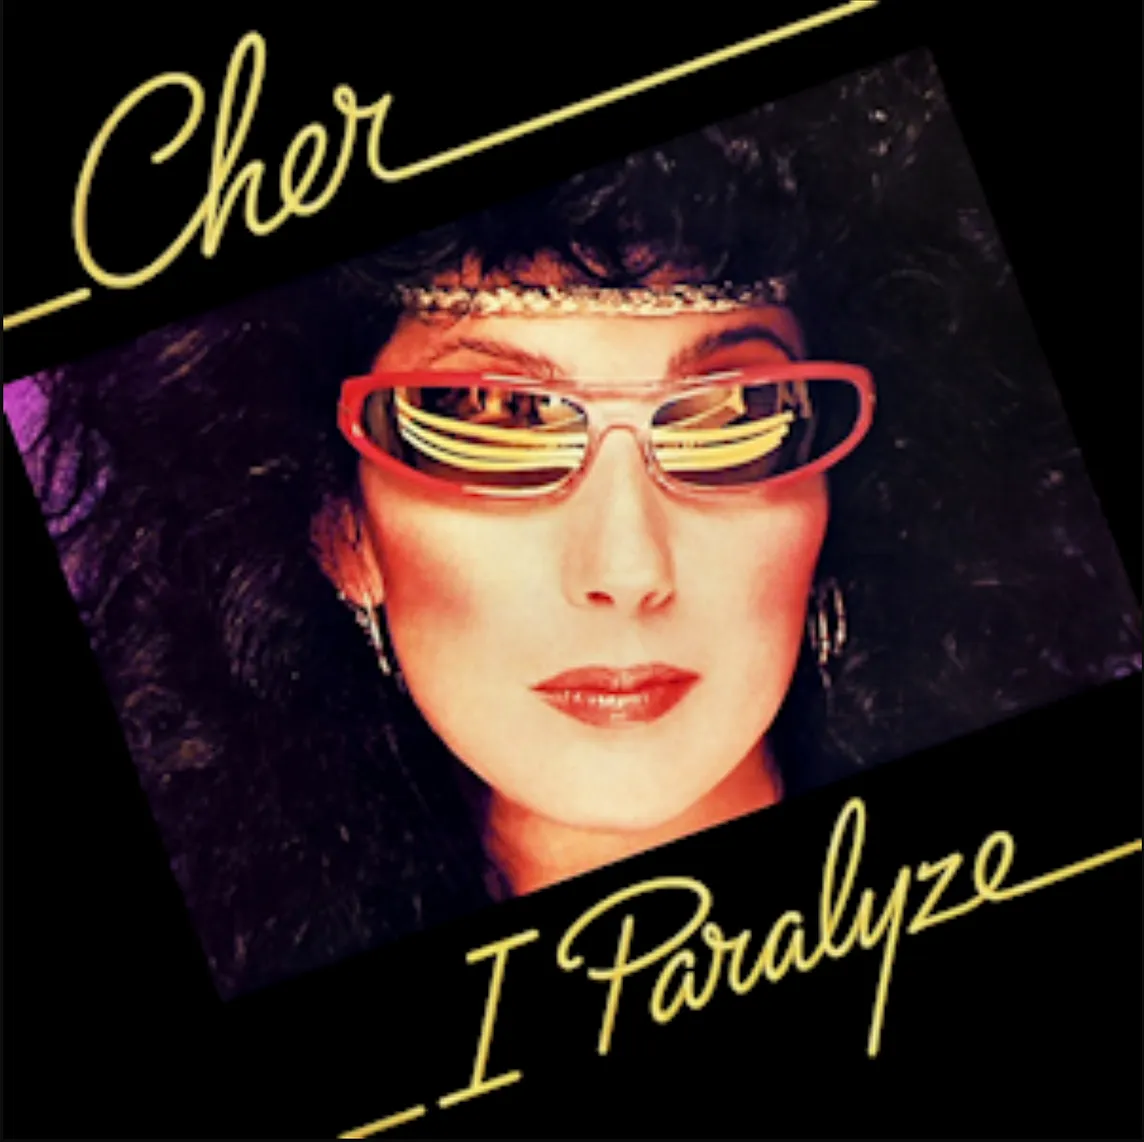 Album cover: “I Paralyze” by Cher.